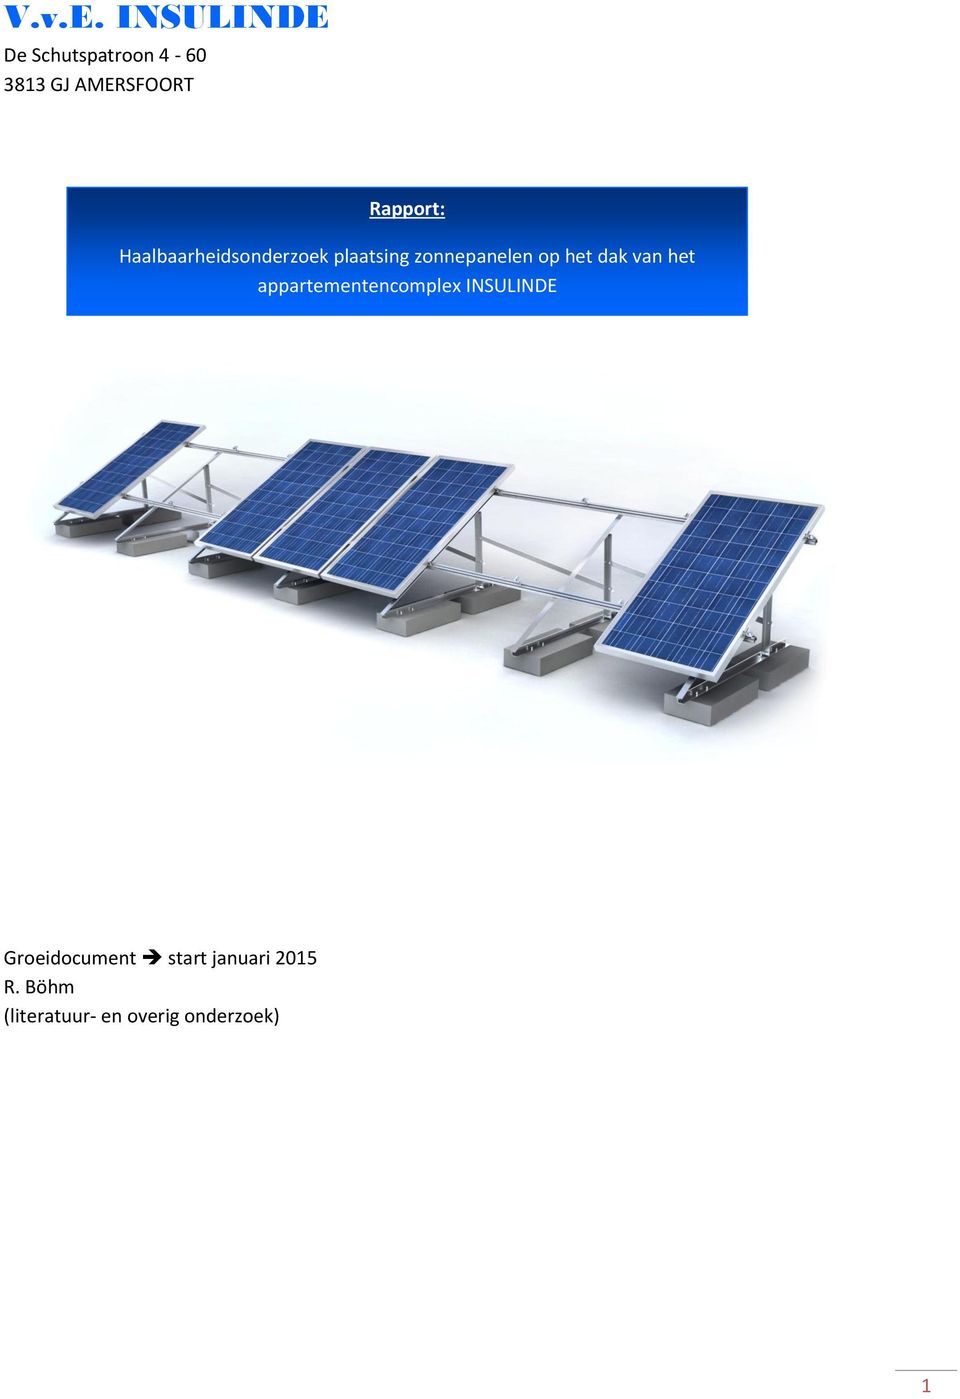 Haalbaarheidsonderzoek plaatsing zonnepanelen op het dak